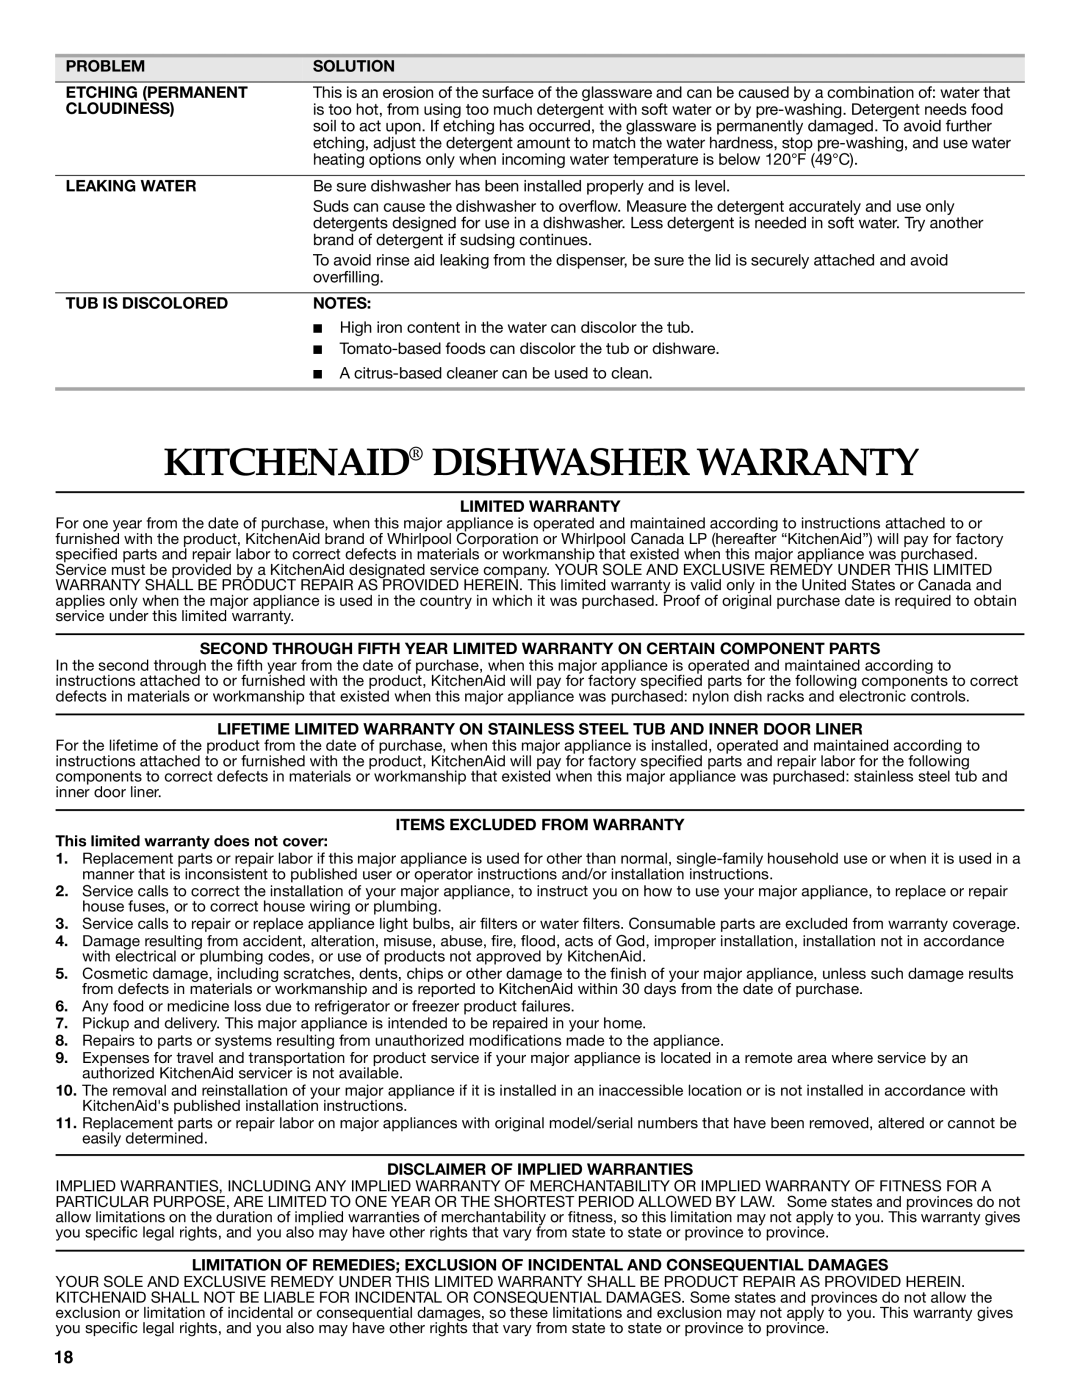 Whirlpool W10300929B warranty Kitchenaid Dishwasher Warranty 